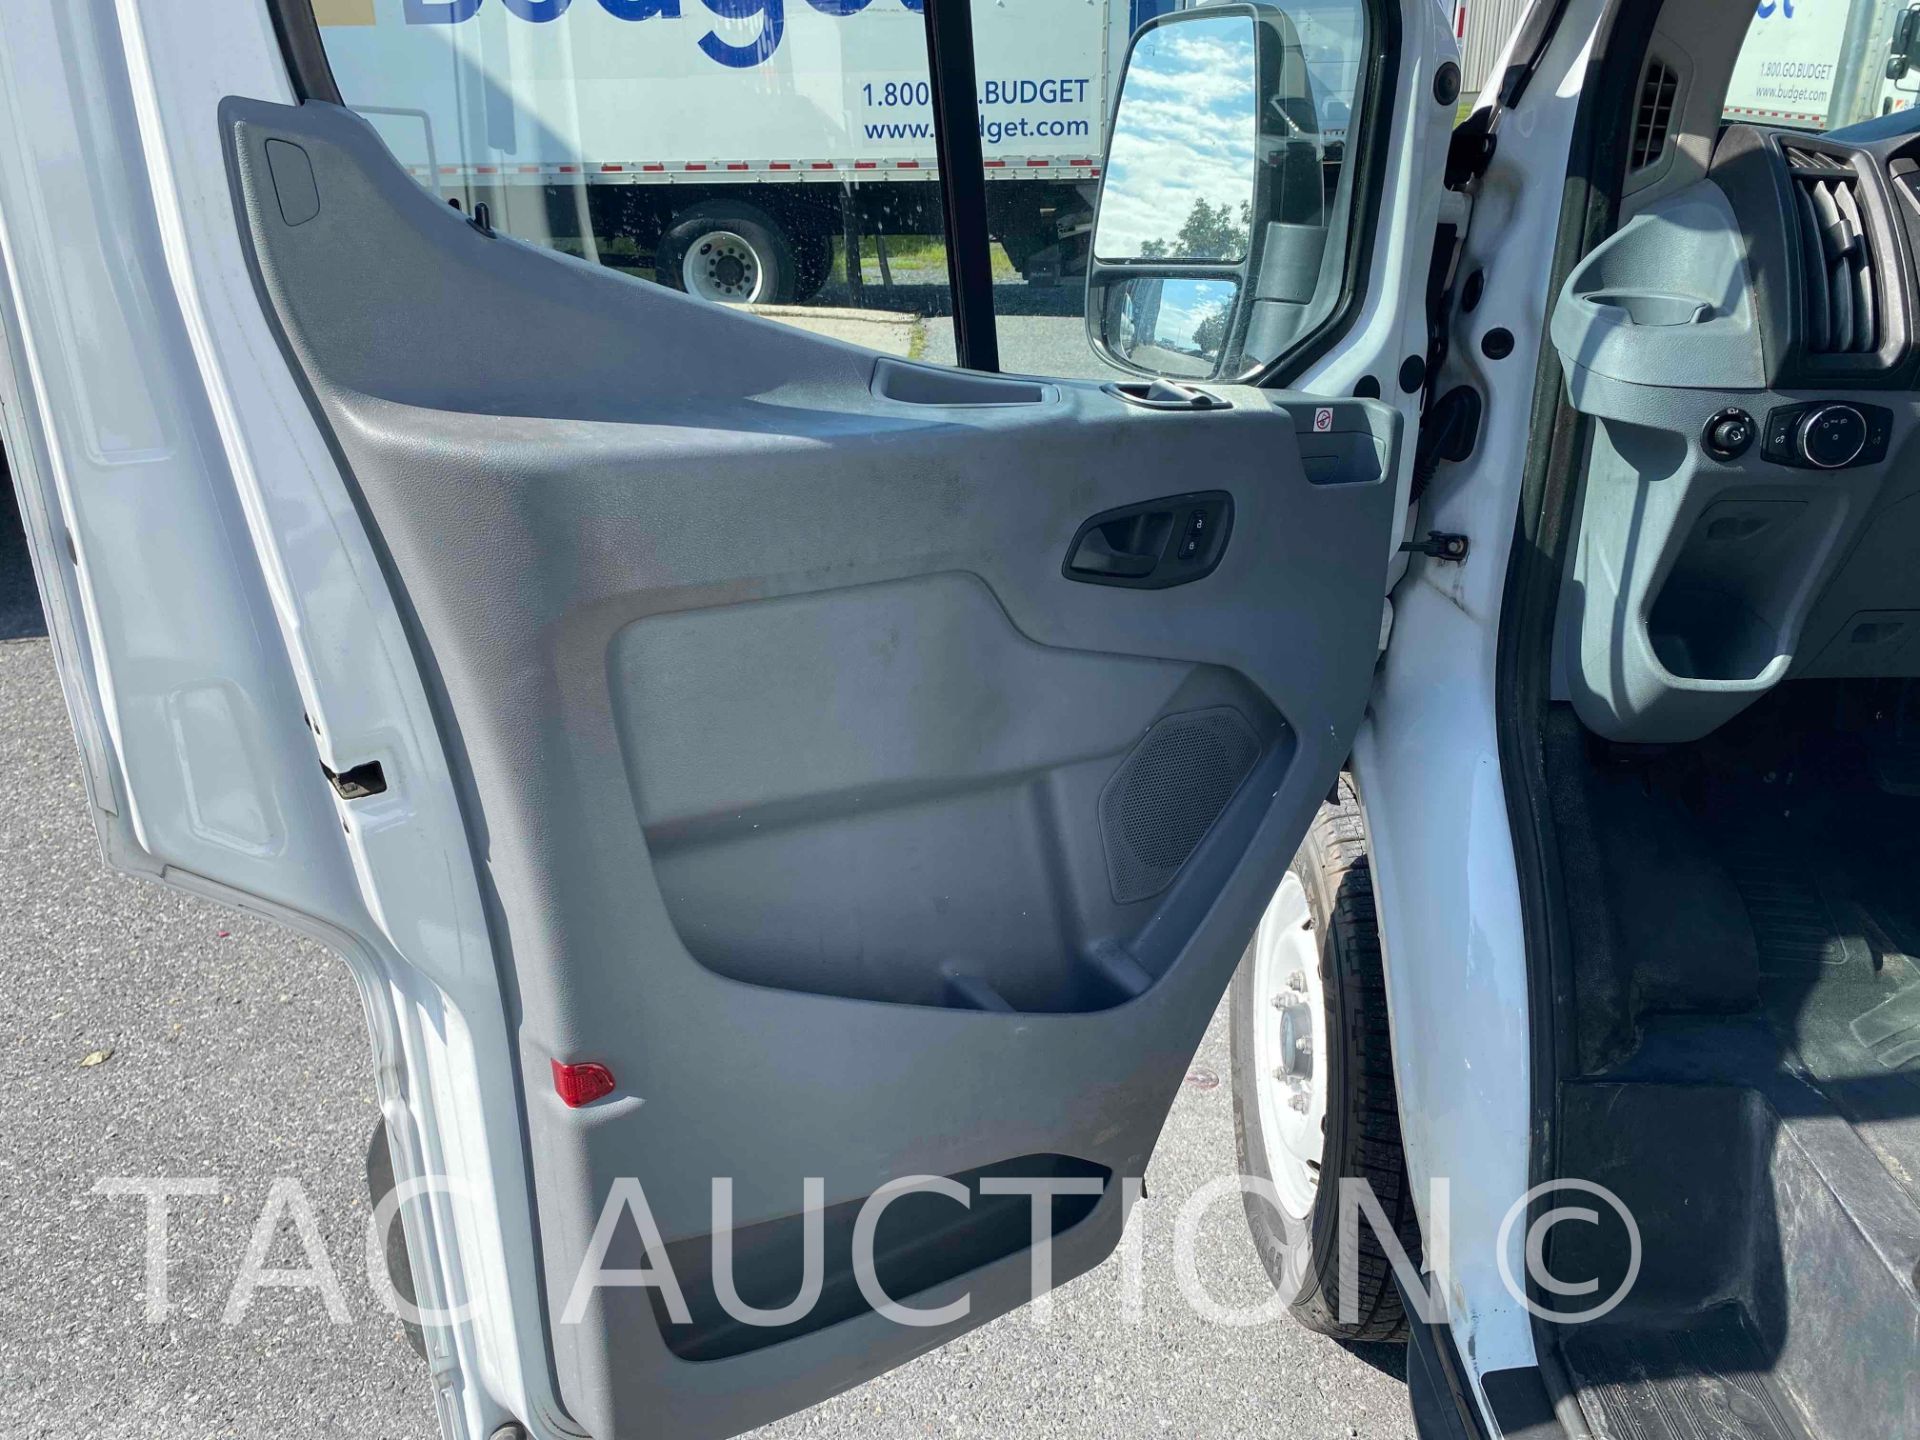 2019 Ford Transit 150 Cargo Van - Image 21 of 51